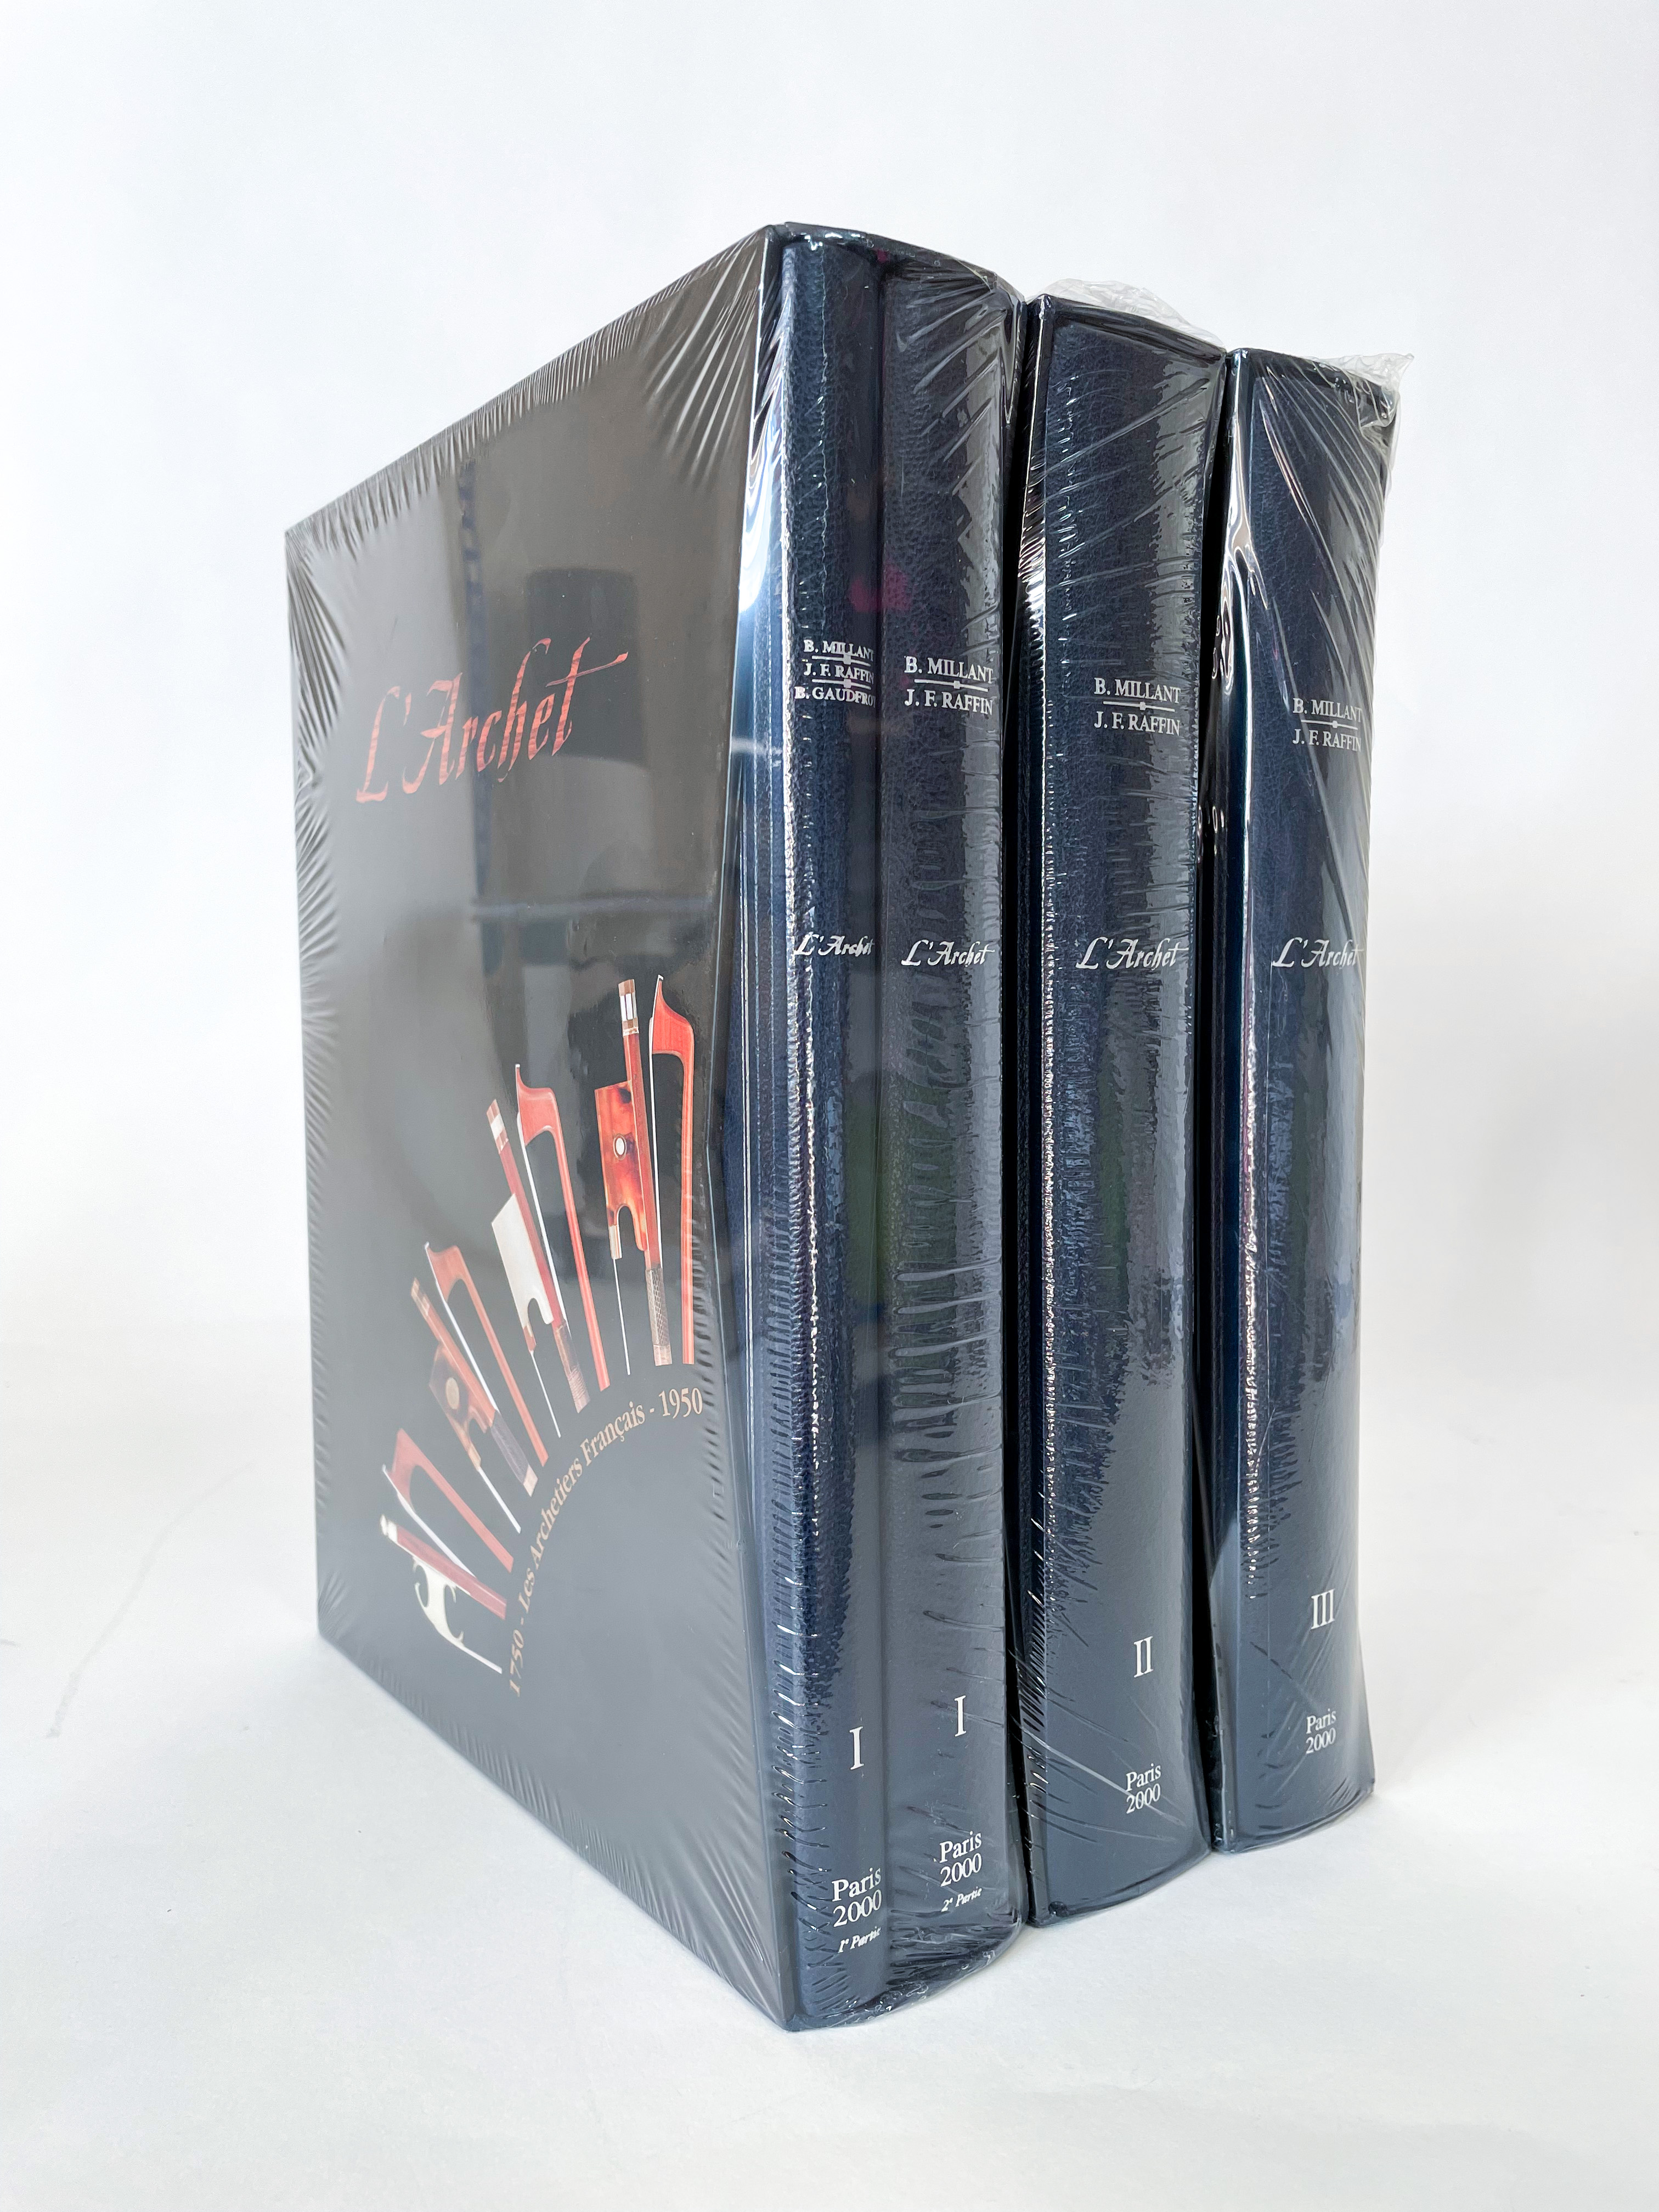 L Archet by B. Millant & J.F. Raffin - Standard Edition